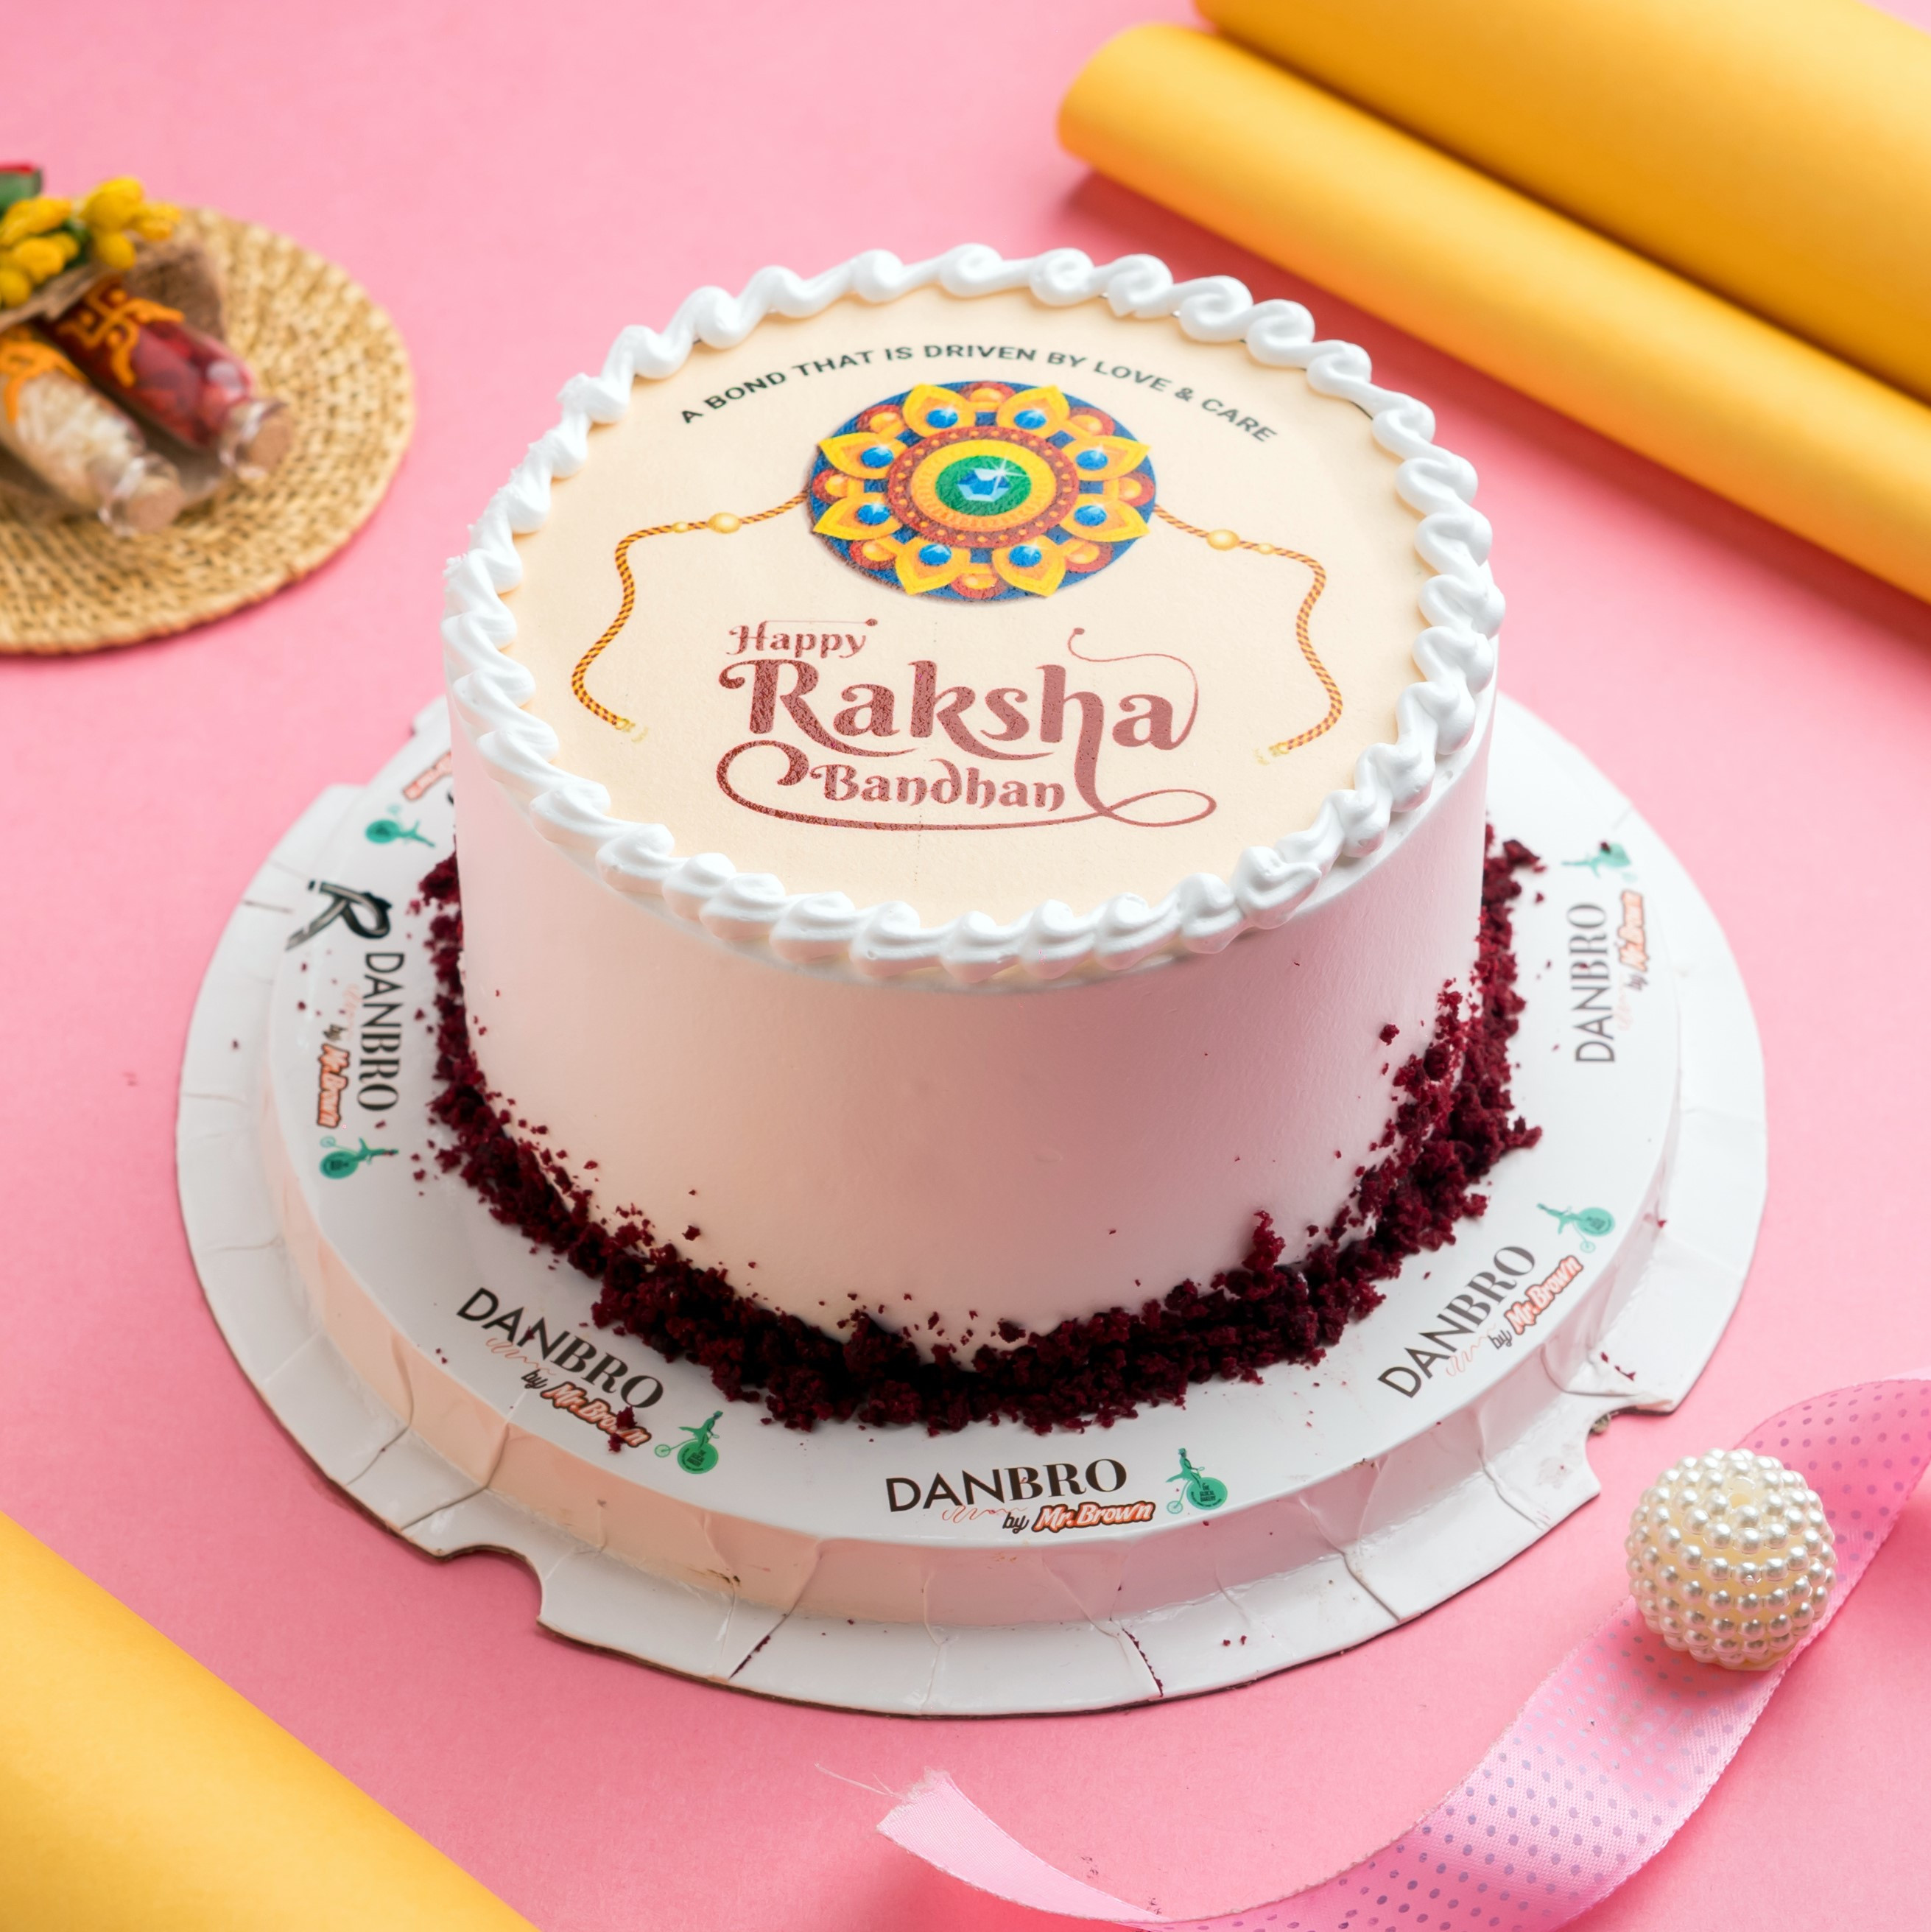 Happy Raksha Bandhan Red Velvet Cake Eggless 1 kg : Gift/Send Rakhi Gifts  Online HD1145074 el |IGP.com